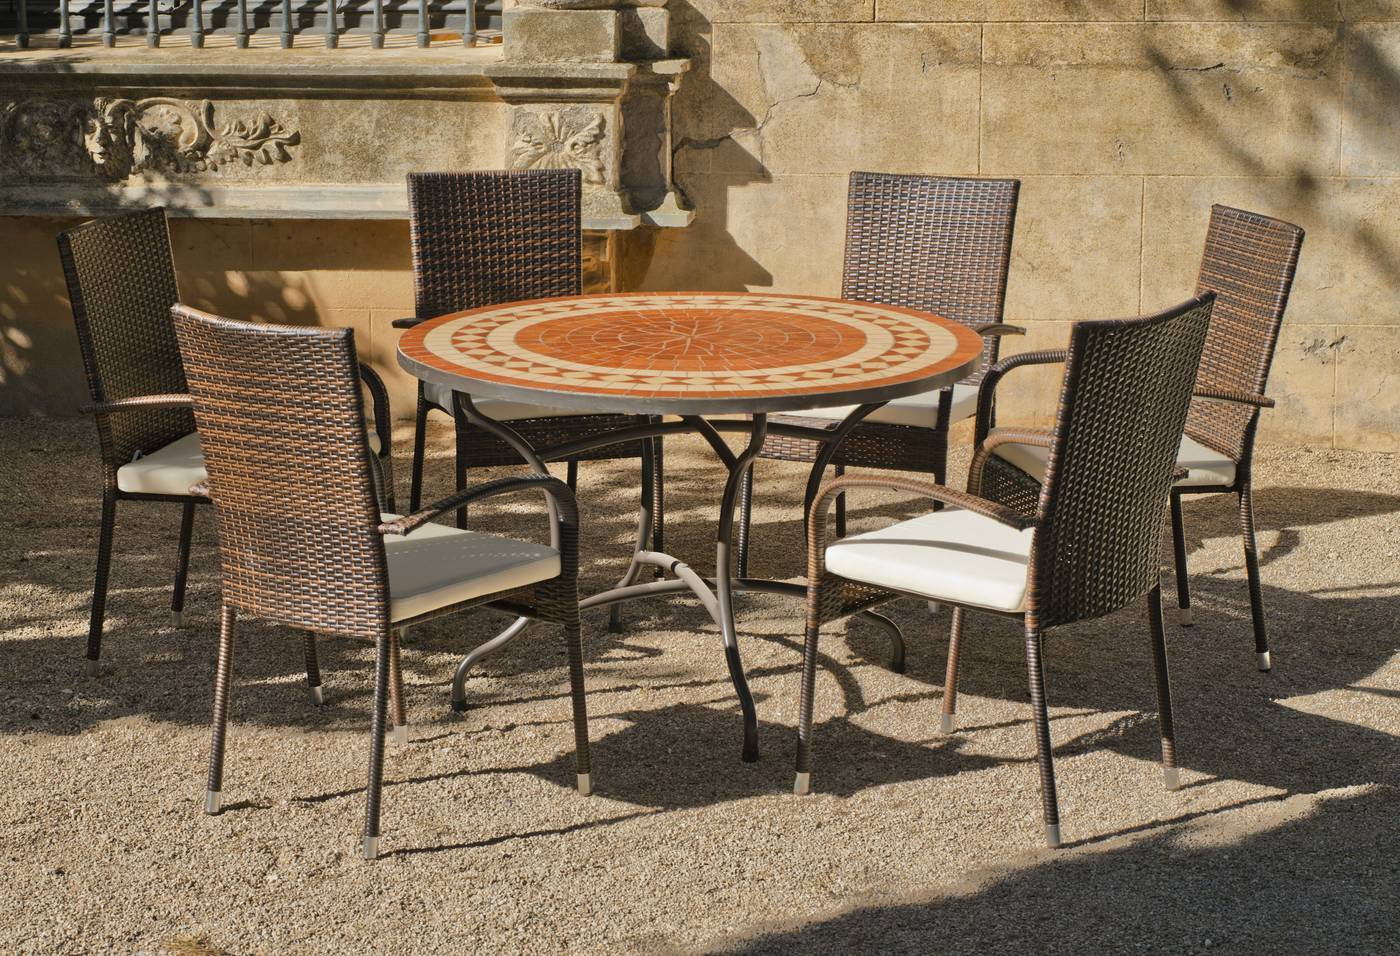 Conjunto de forja para jardín: 1 mesa con panel mosaico + 4 sillones de ratán sintético + 4 cojines